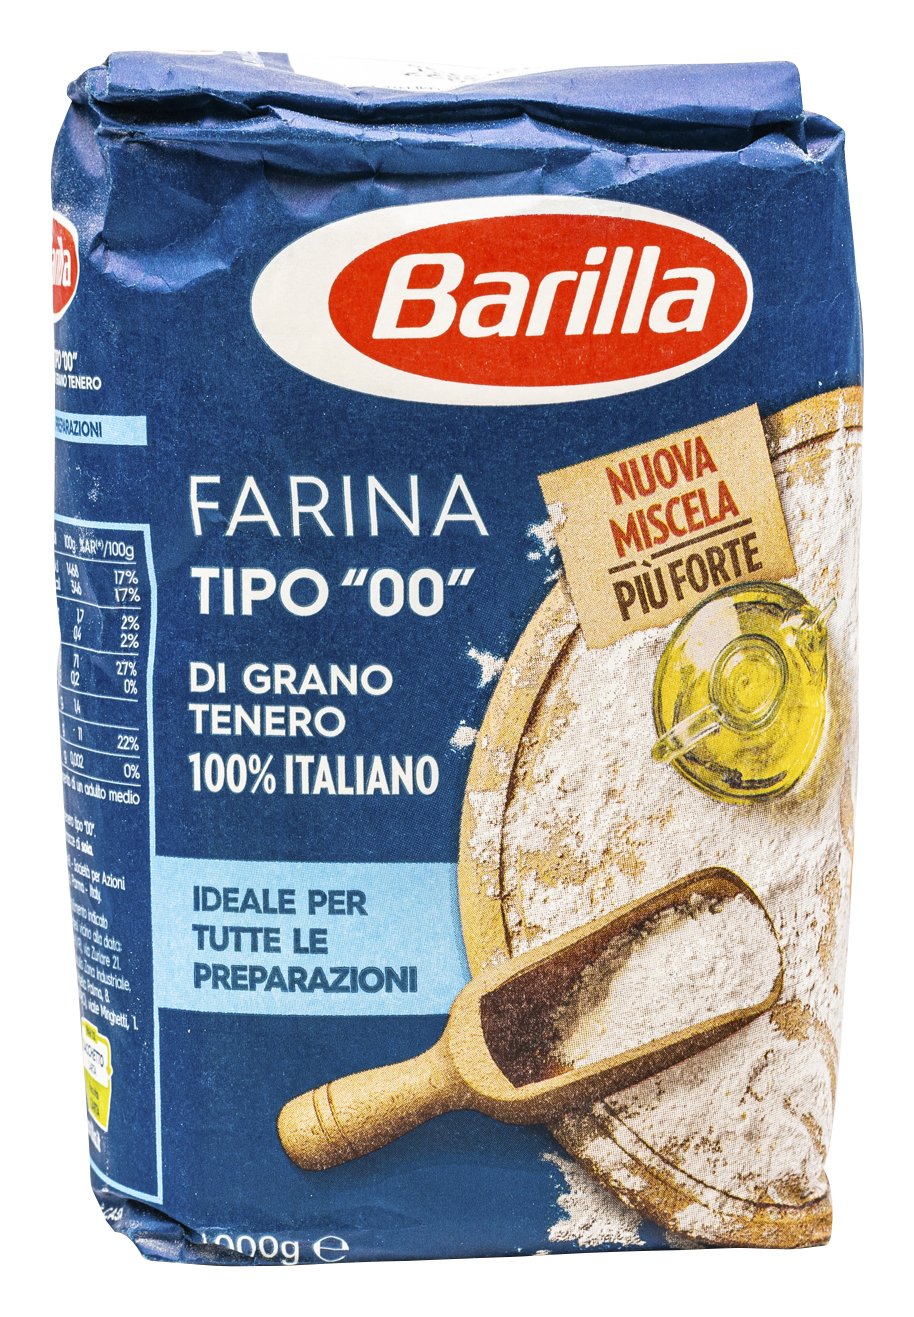 FARINA TIPO 00 DI GRANO TENERO 100% ITALIANO